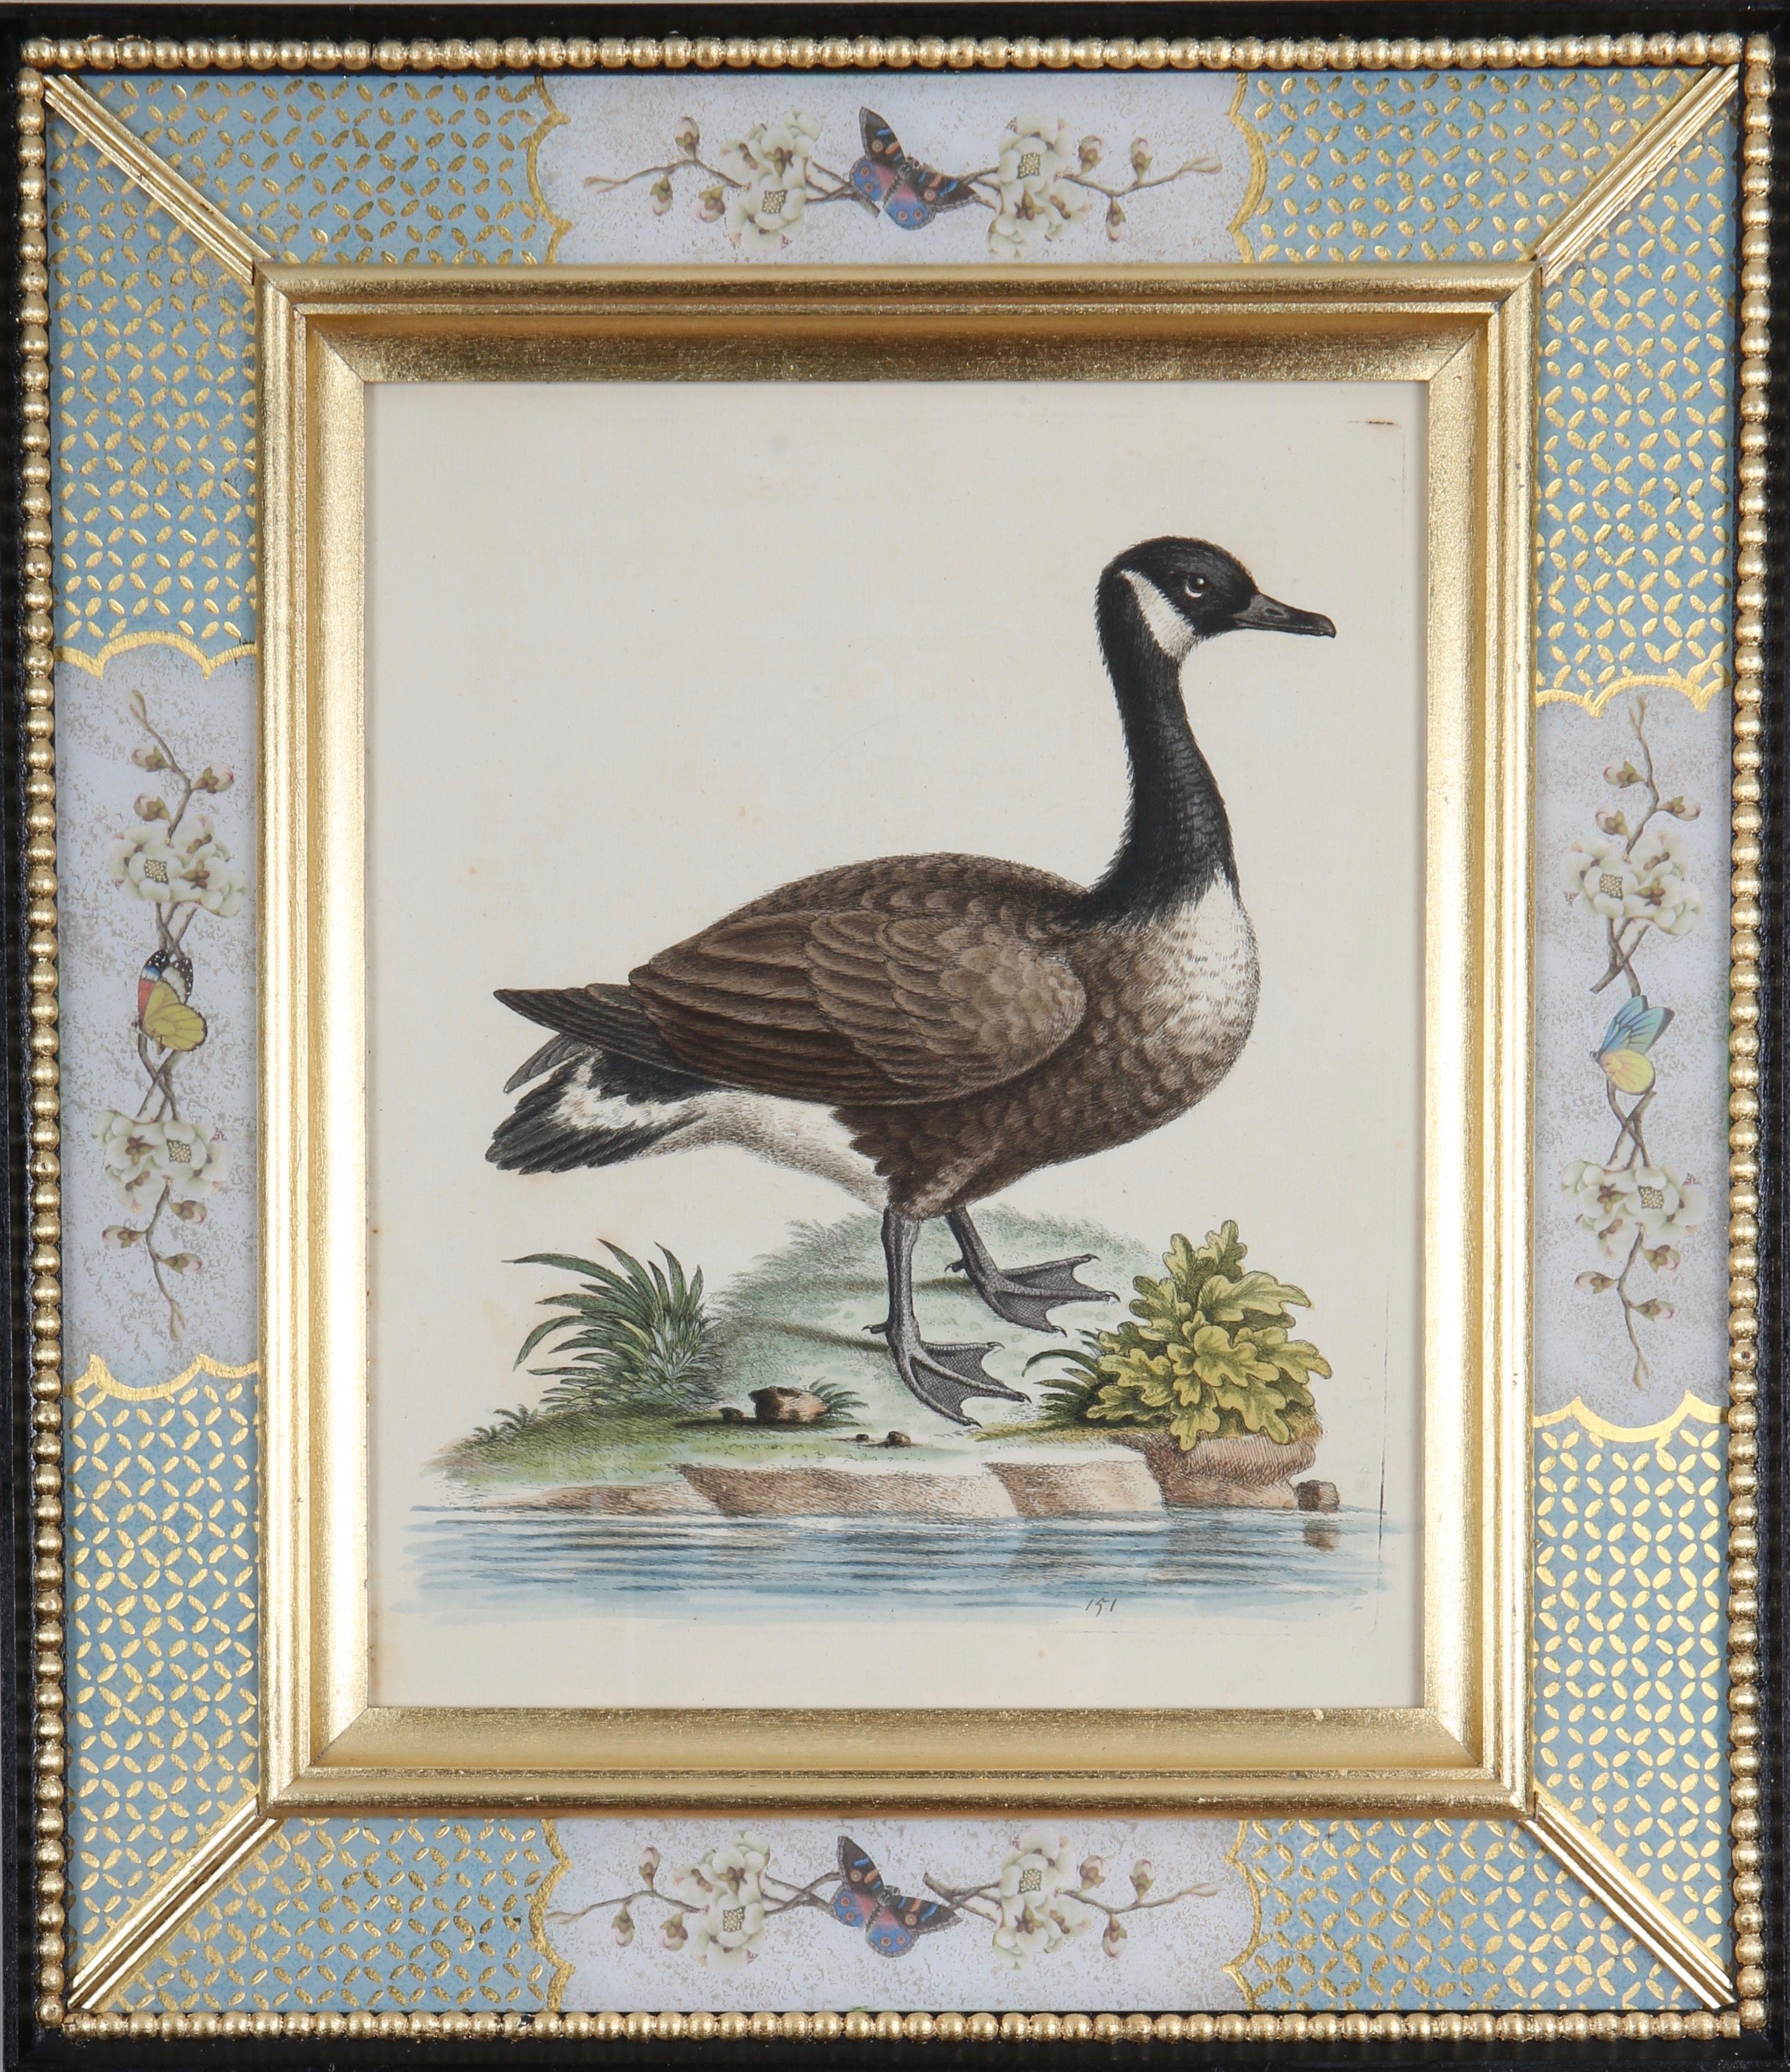 George Edwards: "Eine Geschichte der ungewöhnlichen Vögel", 1749-1761.

Der bekannte englische Naturforscher und Ornithologe George Edwards (1694 -1773) ist vor allem für sein Werk "A Natural History of Uncommon Birds" bekannt, das er zwischen 1743